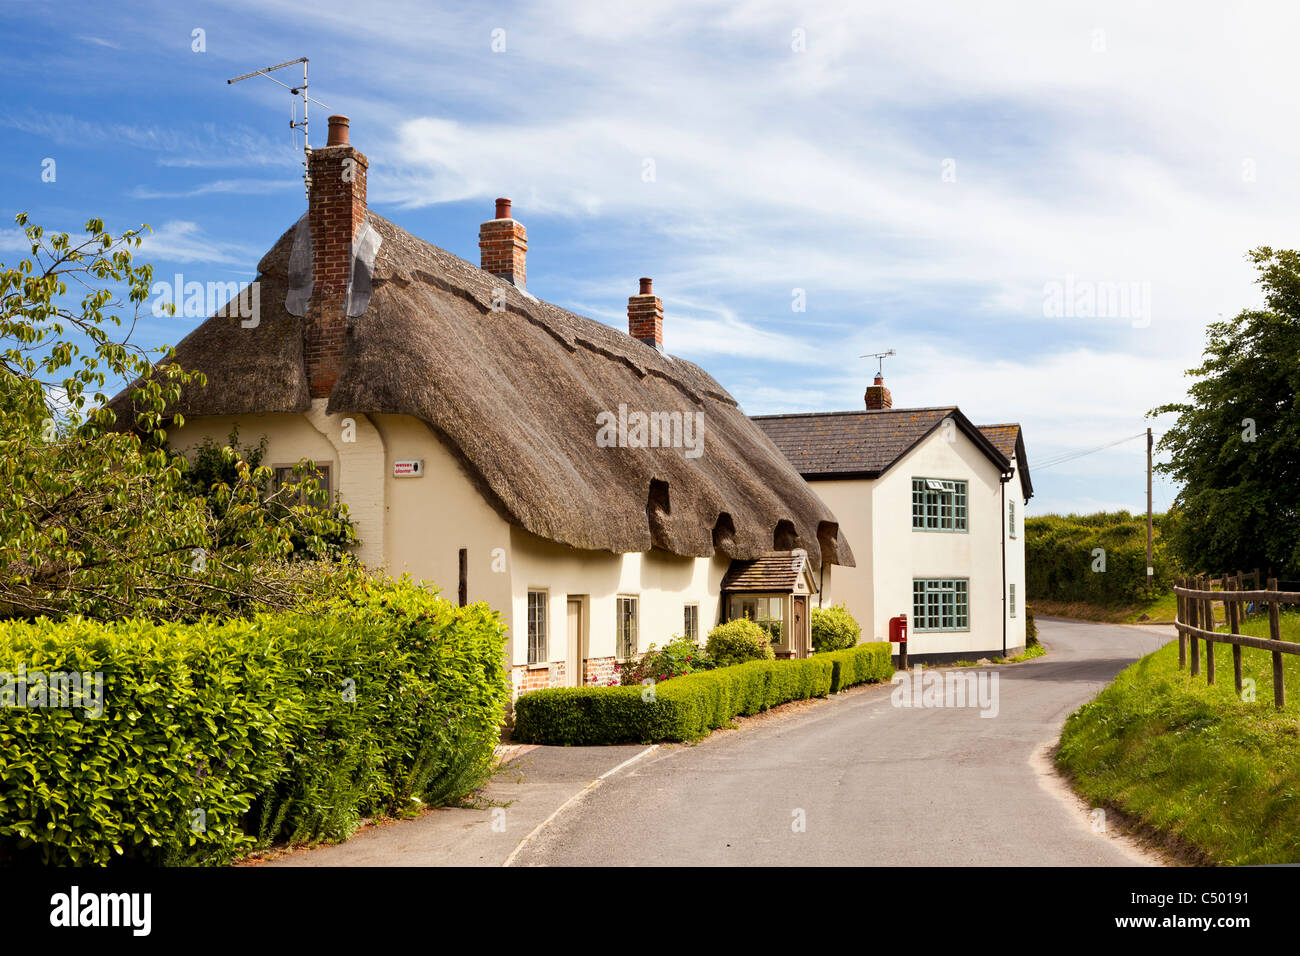 Tradizionale antica staccato cottage con il tetto di paglia, nel rurale villaggio inglese di Tarrant Monkton, Dorset, Inghilterra, Regno Unito in estate Foto Stock